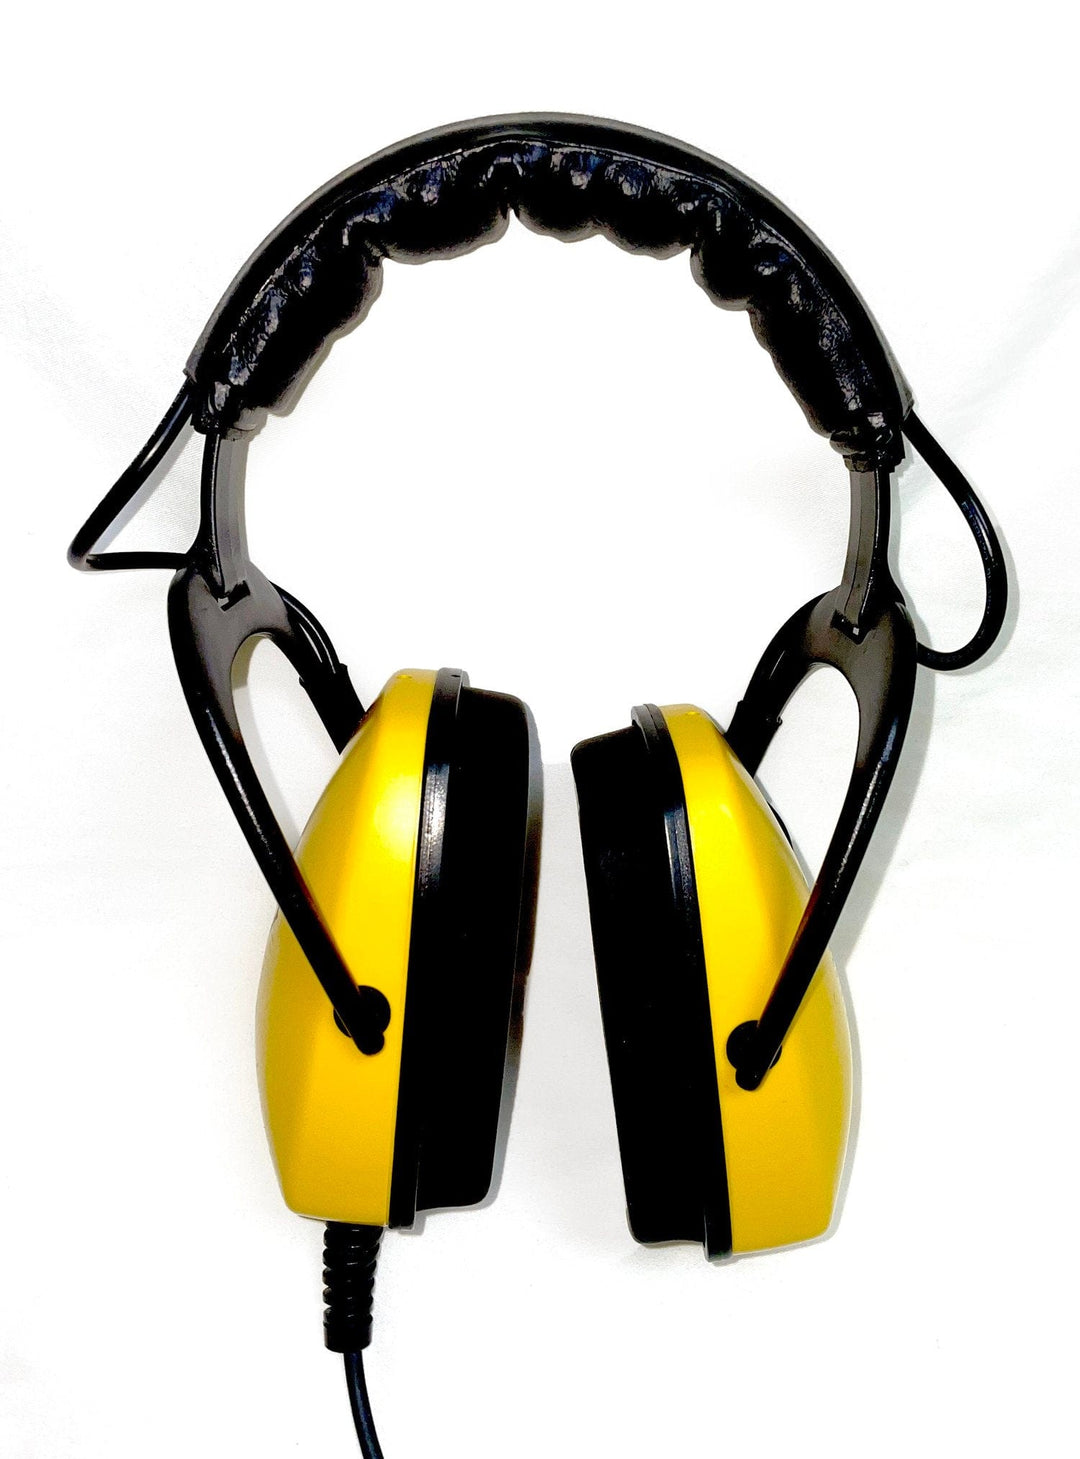 Thresher Submersible Headphones for Garrett AT - Treasure Coast Metal Detectors